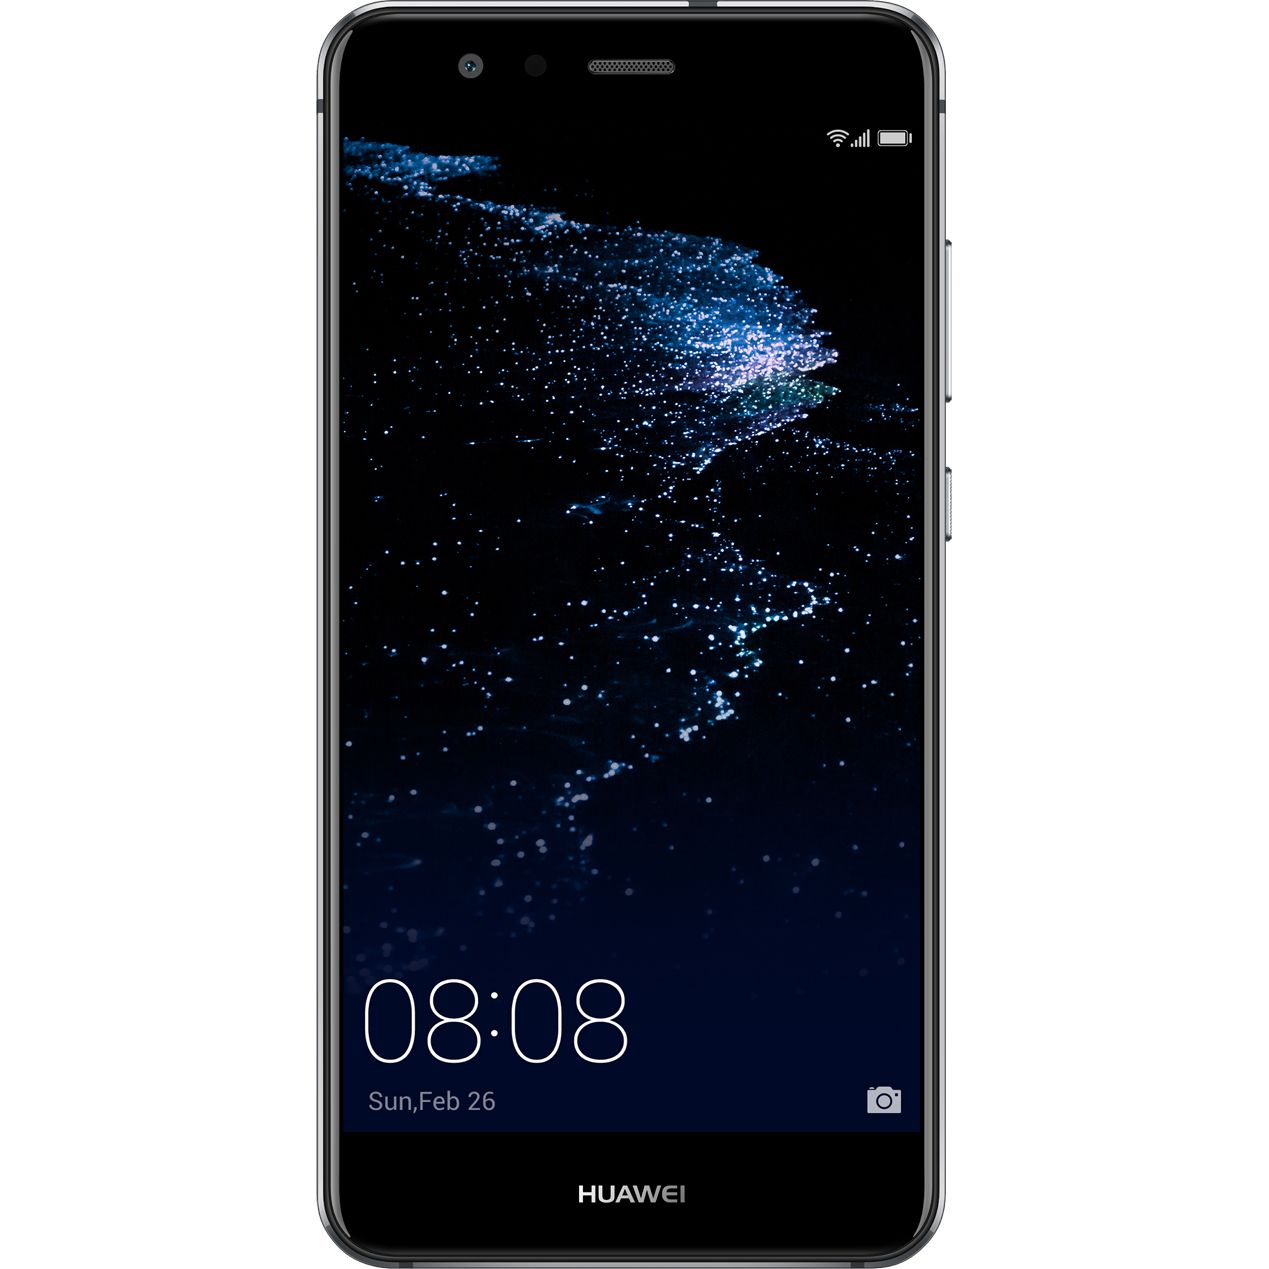 Telefon Mobil Huawei P10 Lite 32GB Flash 3GB RAM Dual SIM 4G Black title=Telefon Mobil Huawei P10 Lite 32GB Flash 3GB RAM Dual SIM 4G Black